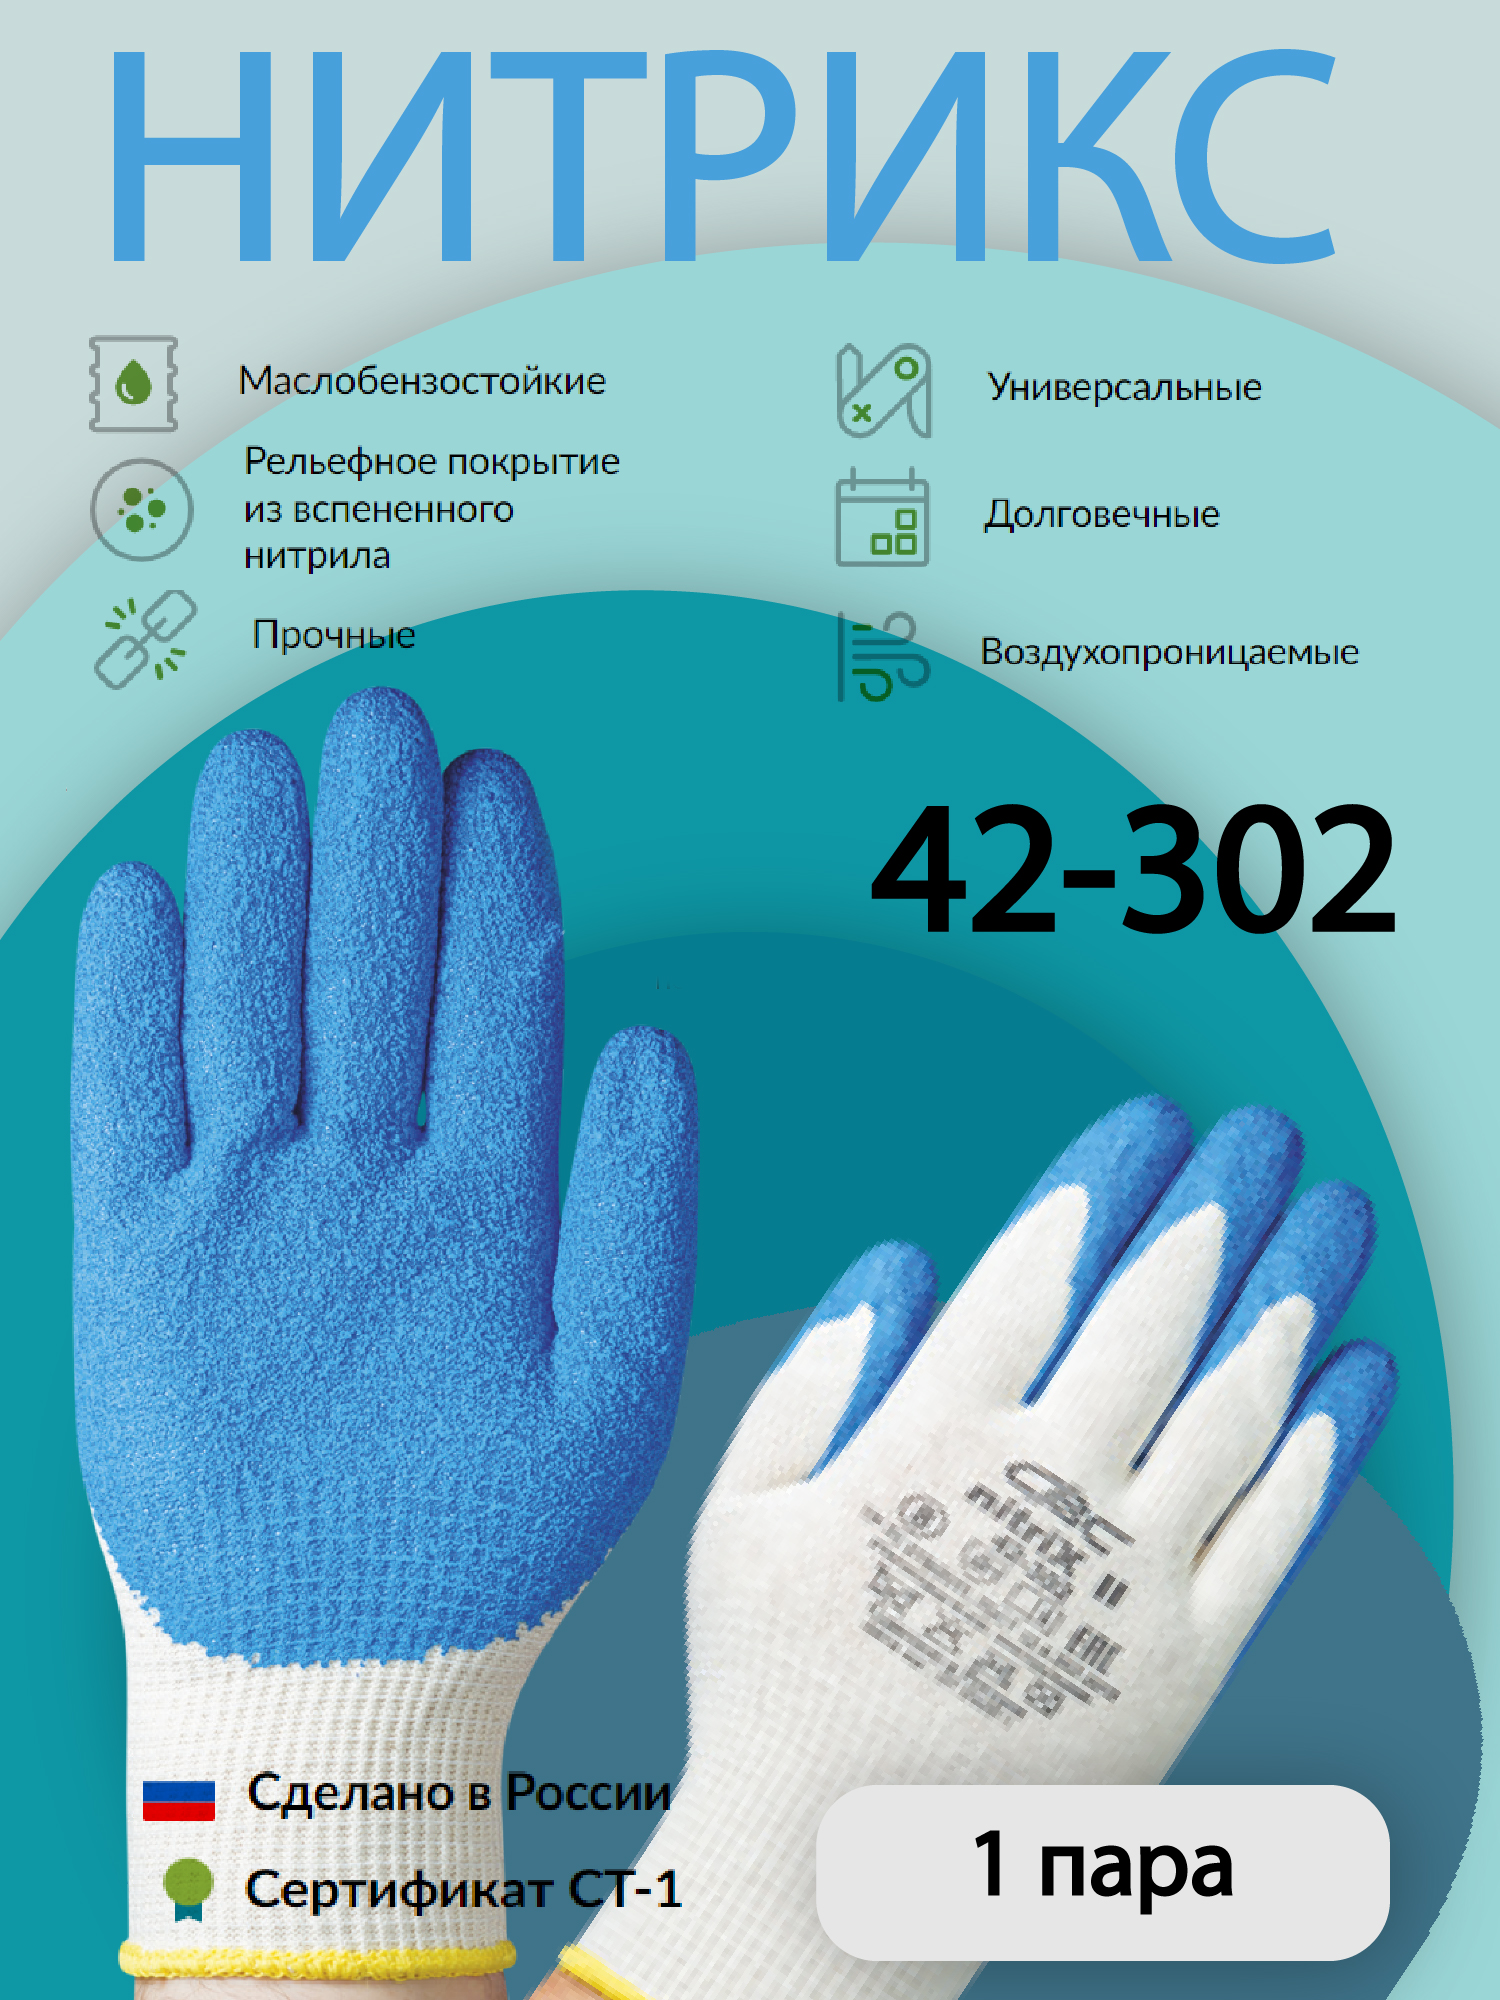 Перчатки защитные СВС НИТРИКС 42-302 рельефные, из вспененного нитрила